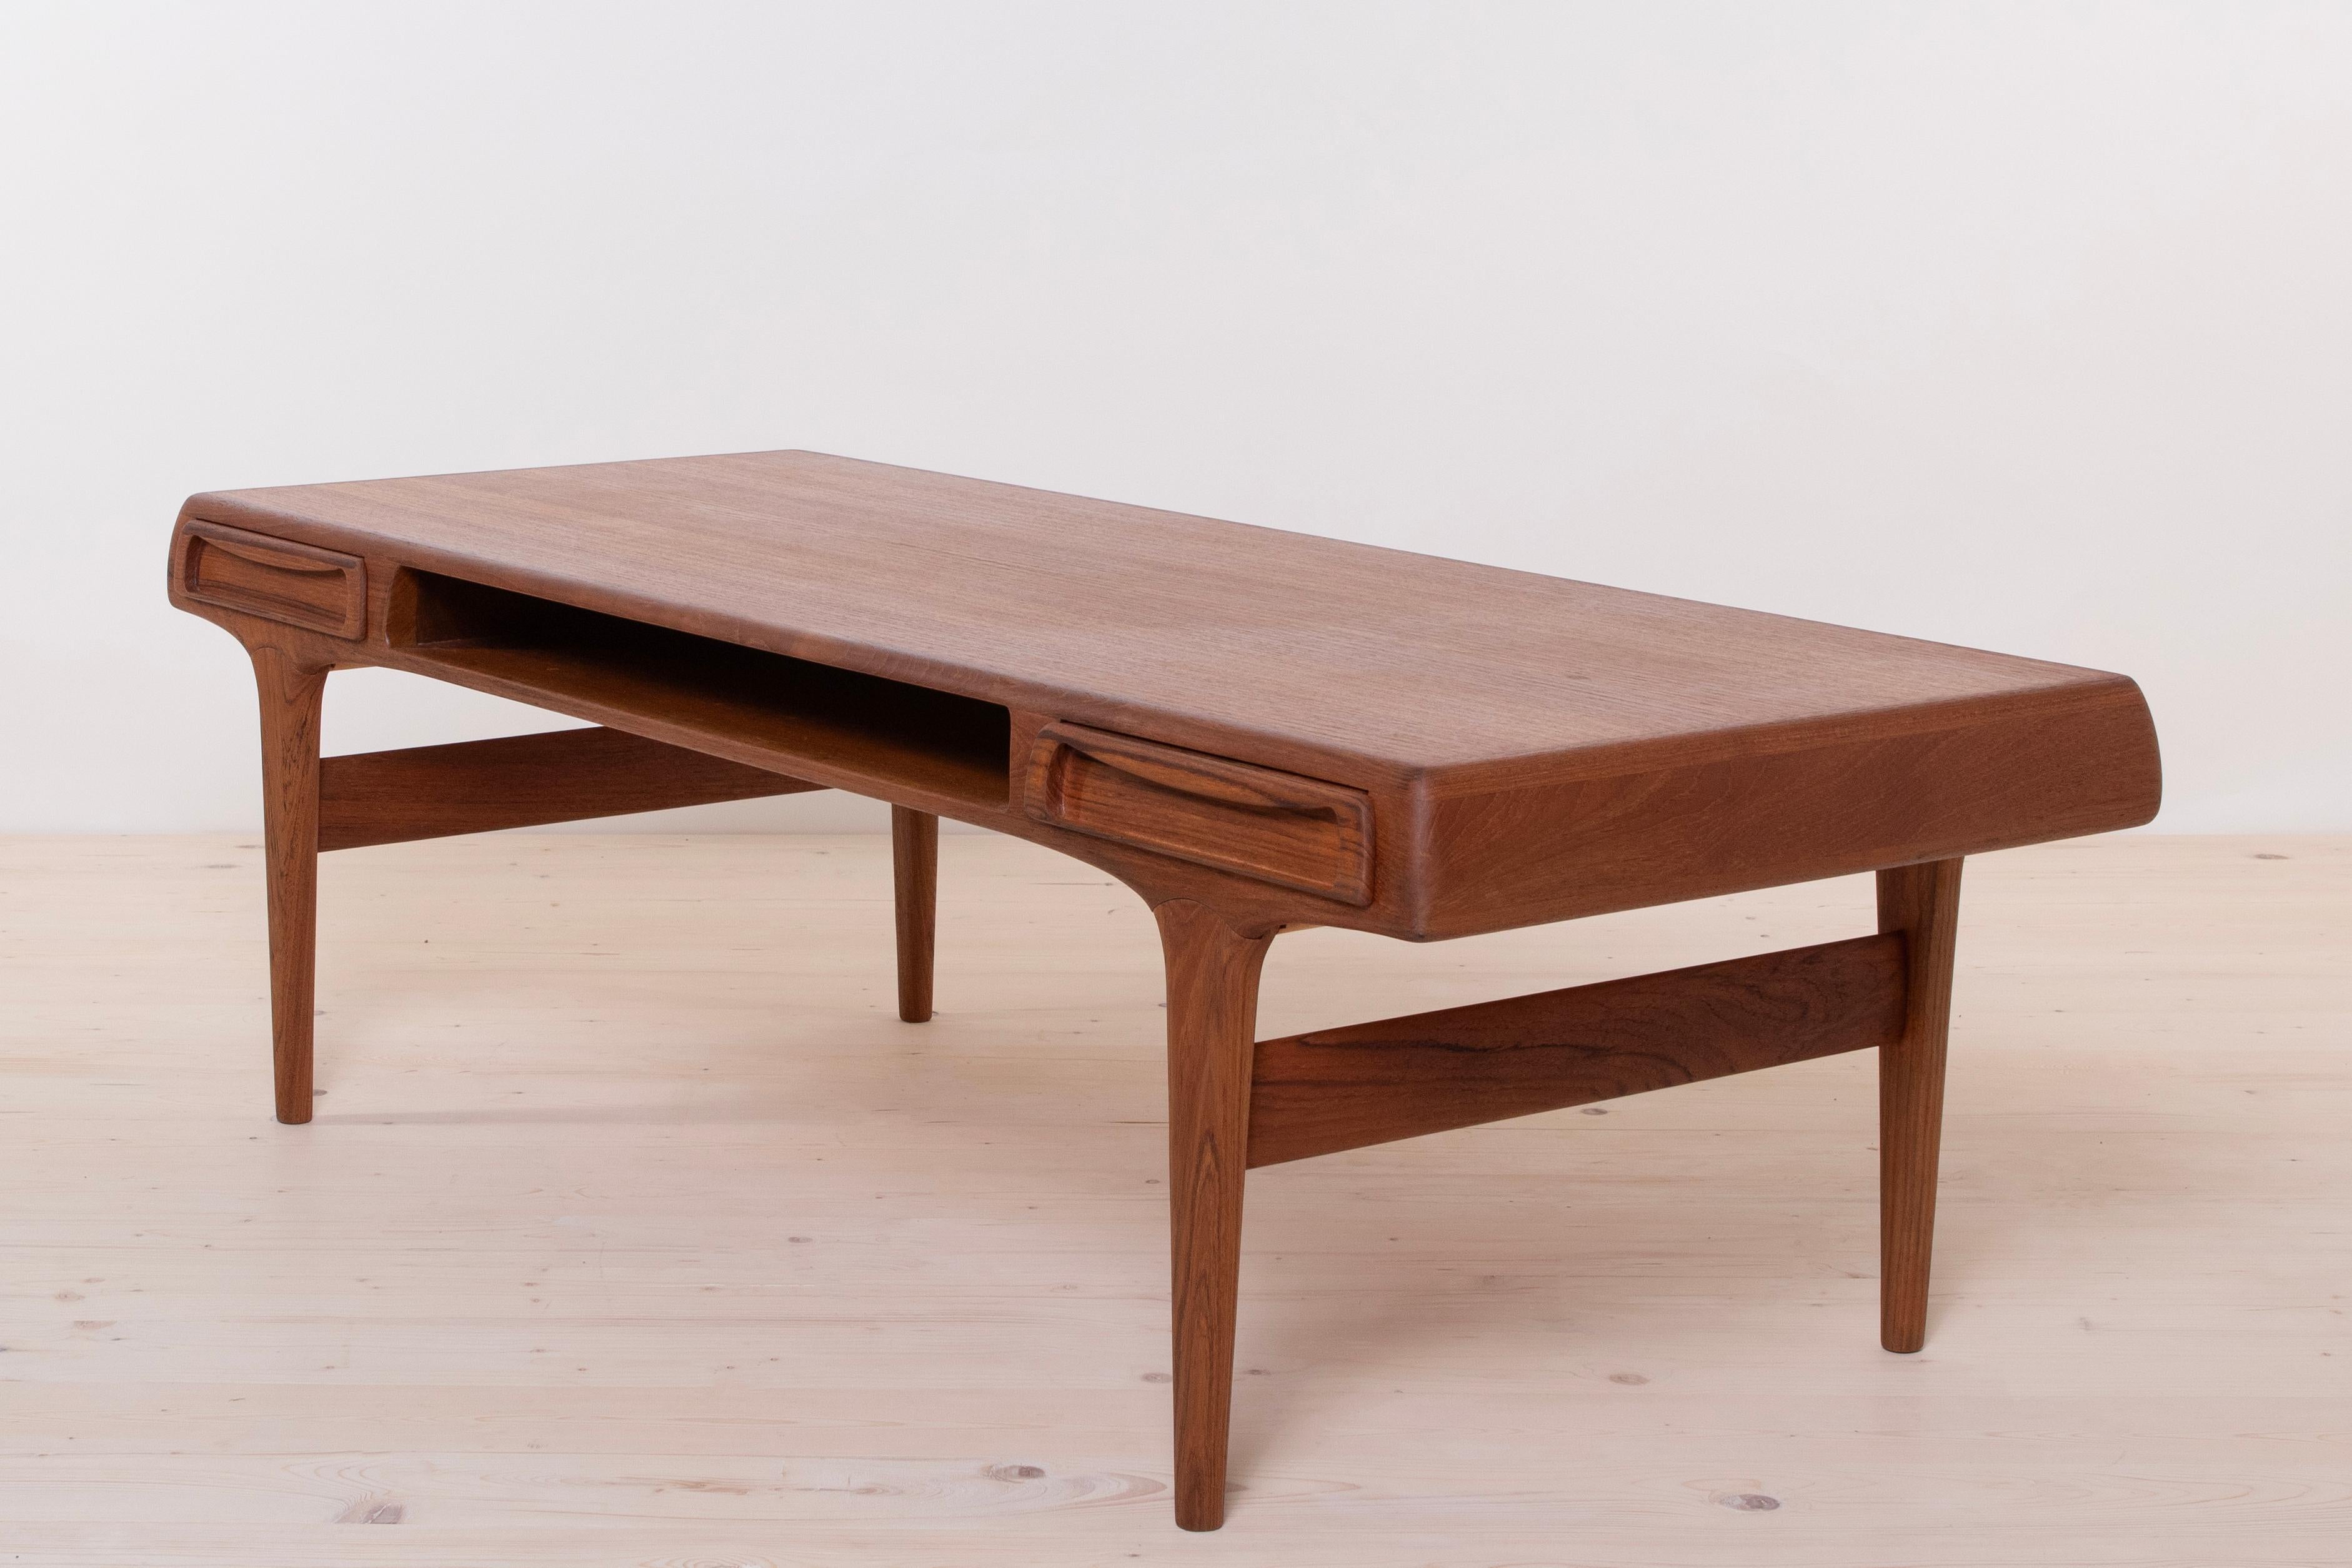  Mid-Century Modern Teak Coffee Table by Johannes Andersen, Scandinavian Design For Sale 2